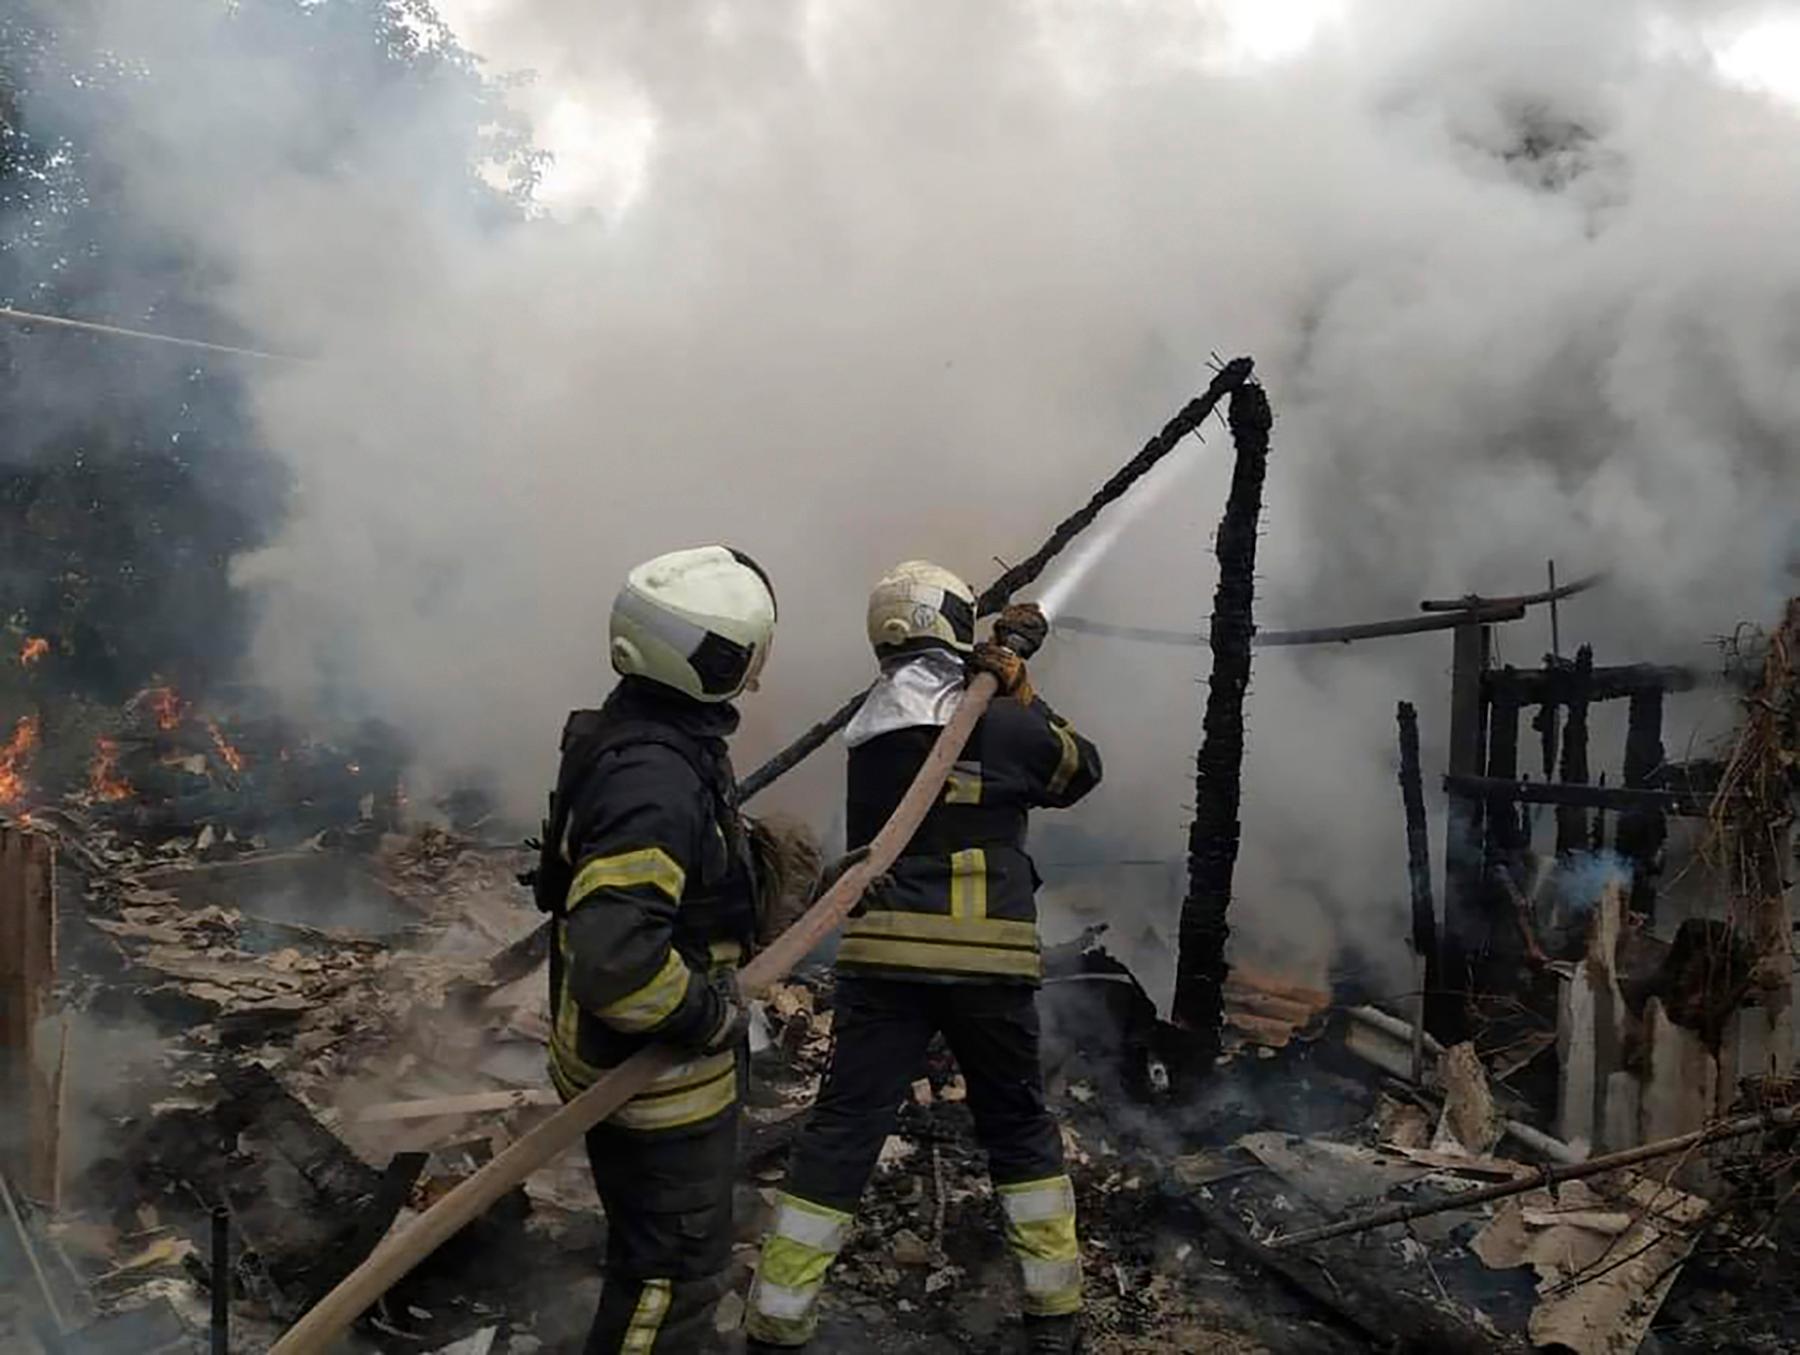 Räddningstjänsten försöker släcka en brand i en byggnad. Bilden är från söndagen den 3 juli.